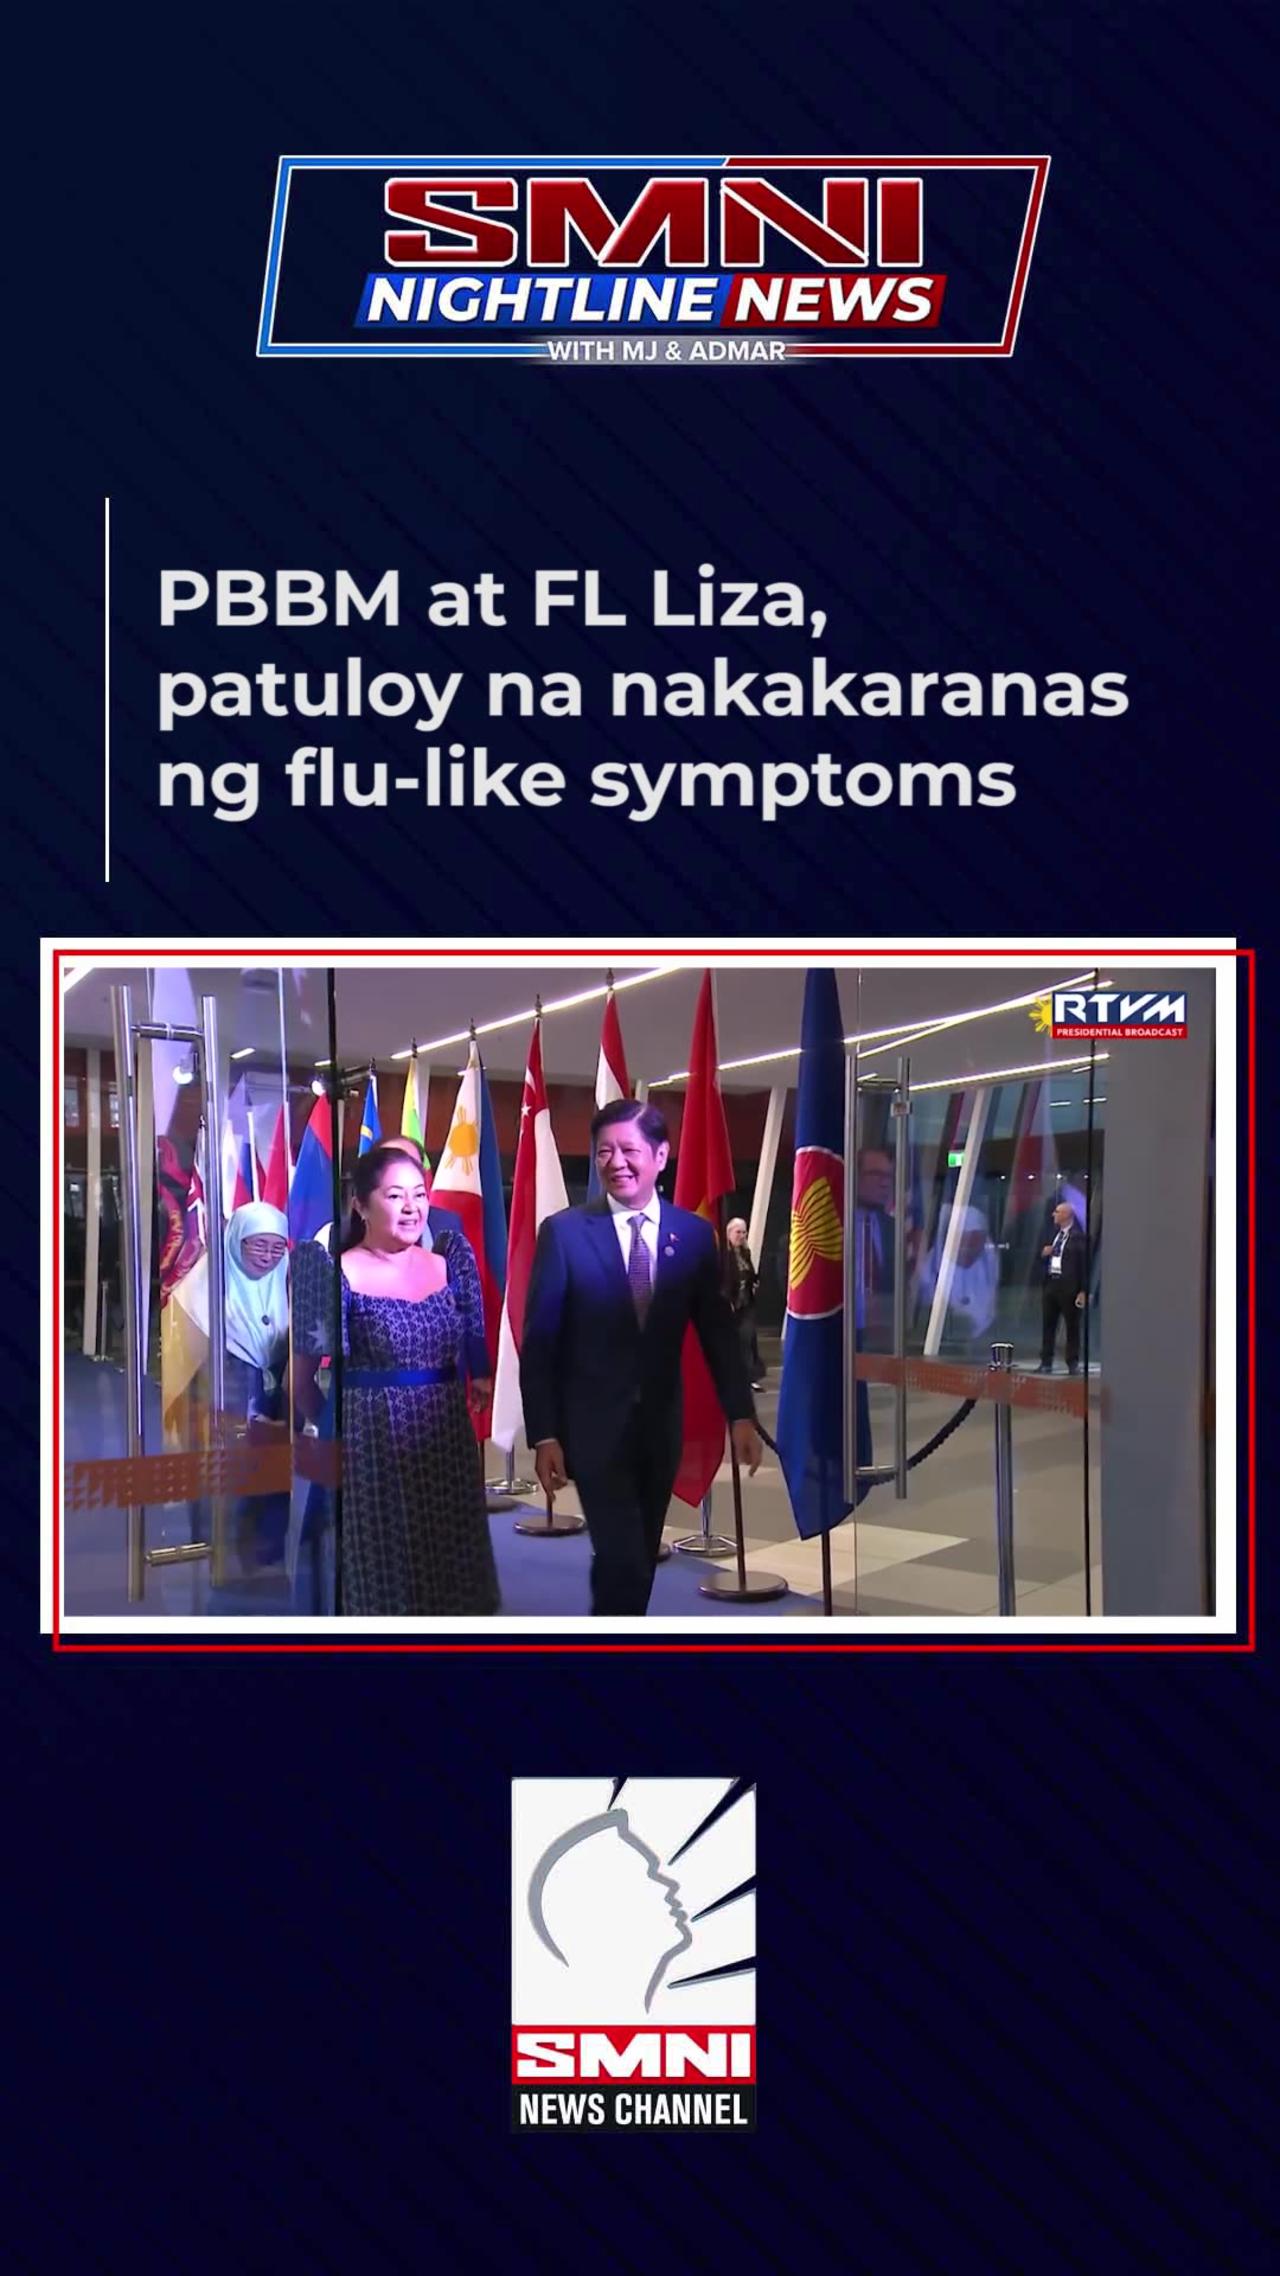 PBBM at FL Liza, patuloy na nakararanas ng flu-like symptoms